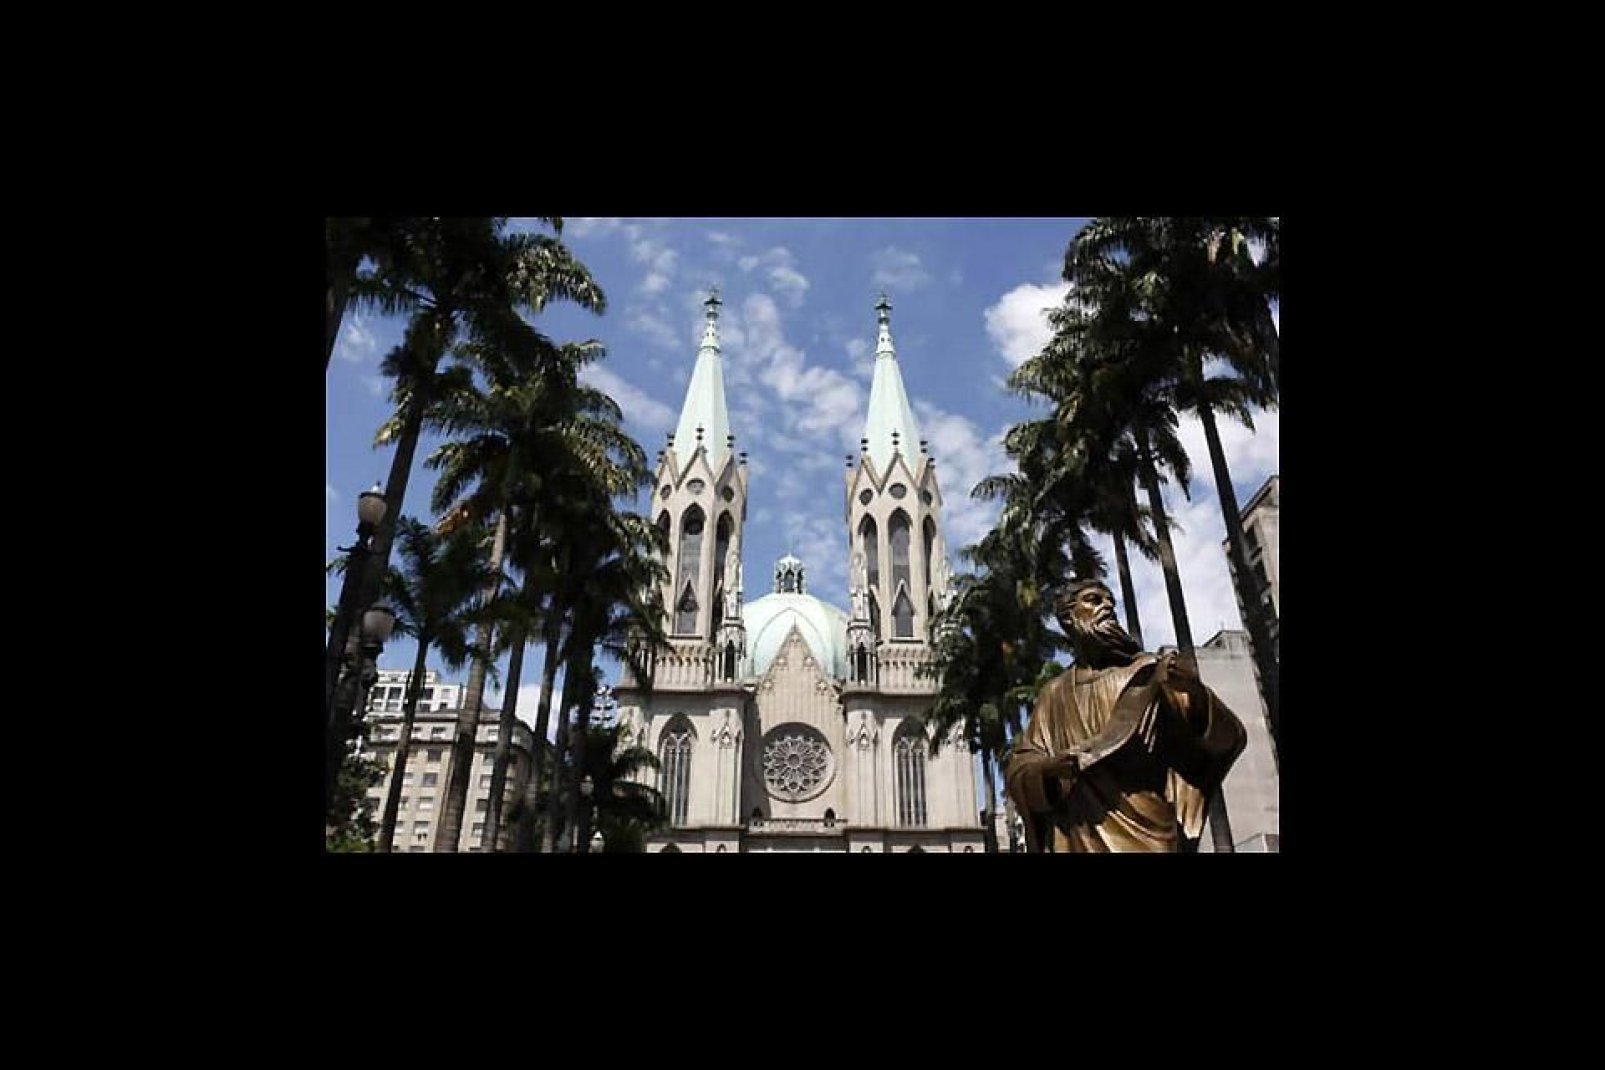 Face à la cathédrale, la statue de l'apôtre Paul s'impose pour rendre hommage au fondateur de São Paulo. Elle a été érigée en son honneur suite à sa conversion au catholicisme.